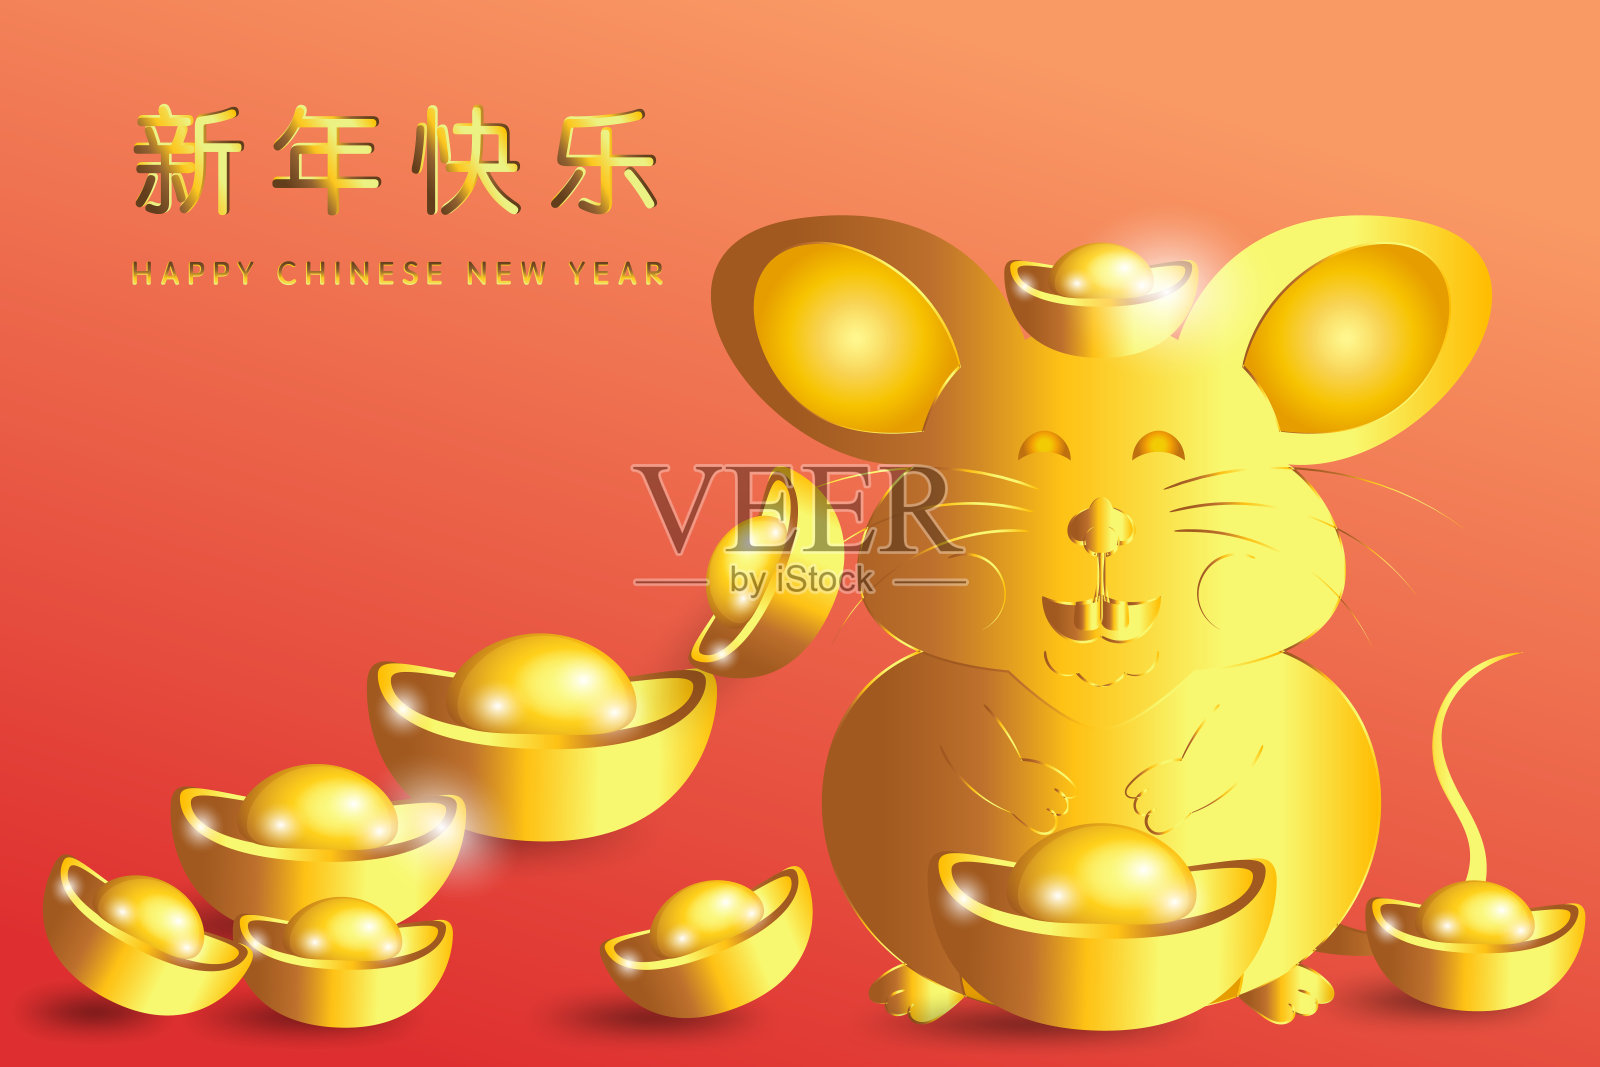 2020年鼠年春节快乐。金鼠祝你吉祥如意。(中文字母代表新年快乐)矢量插图EPS10。插画图片素材